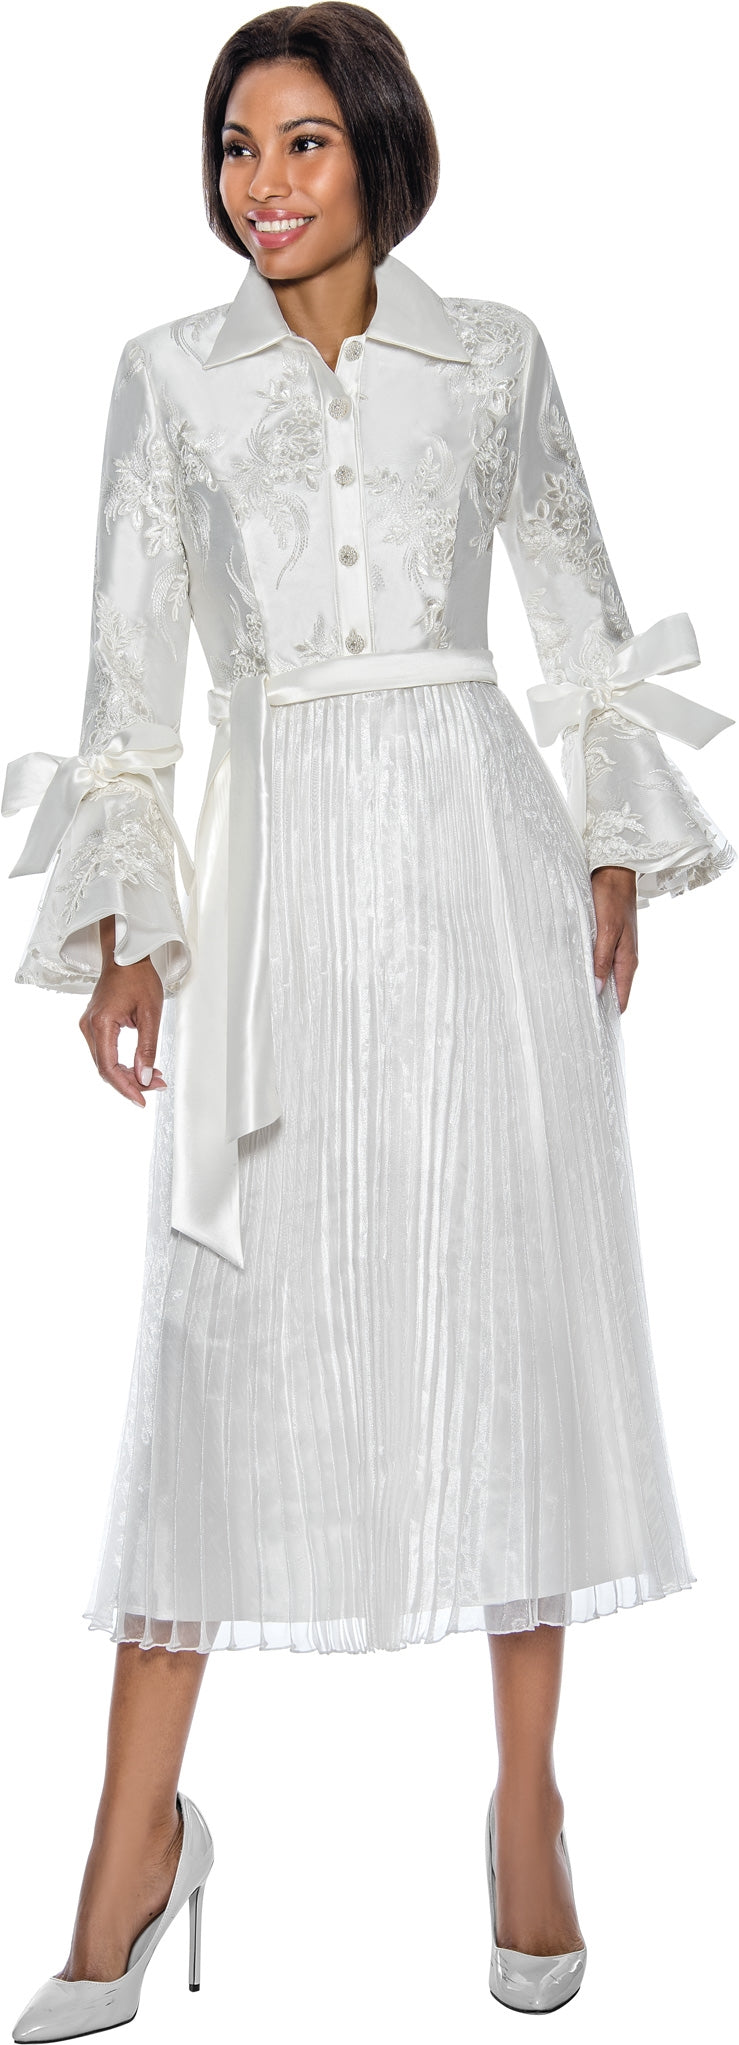 Terramina Church Dress 7054 - Church Suits For Less